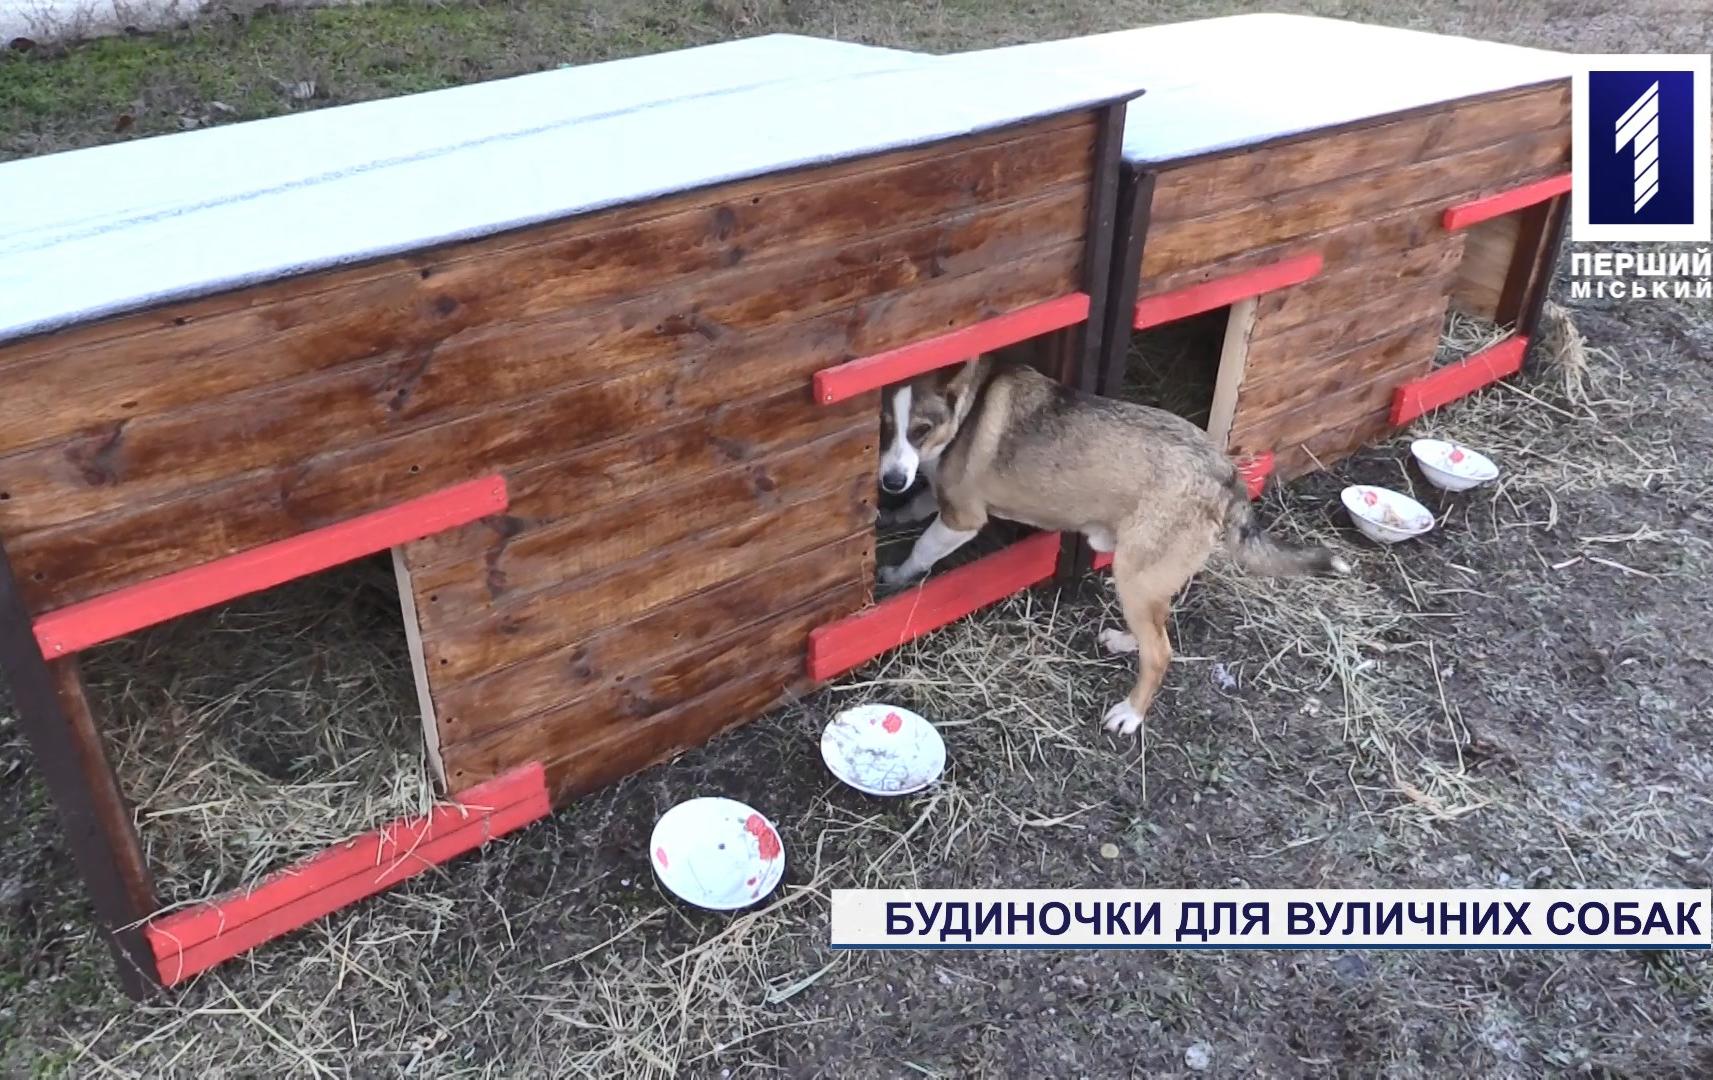 Будиночки для вуличних собак облаштували жителі Східного-2